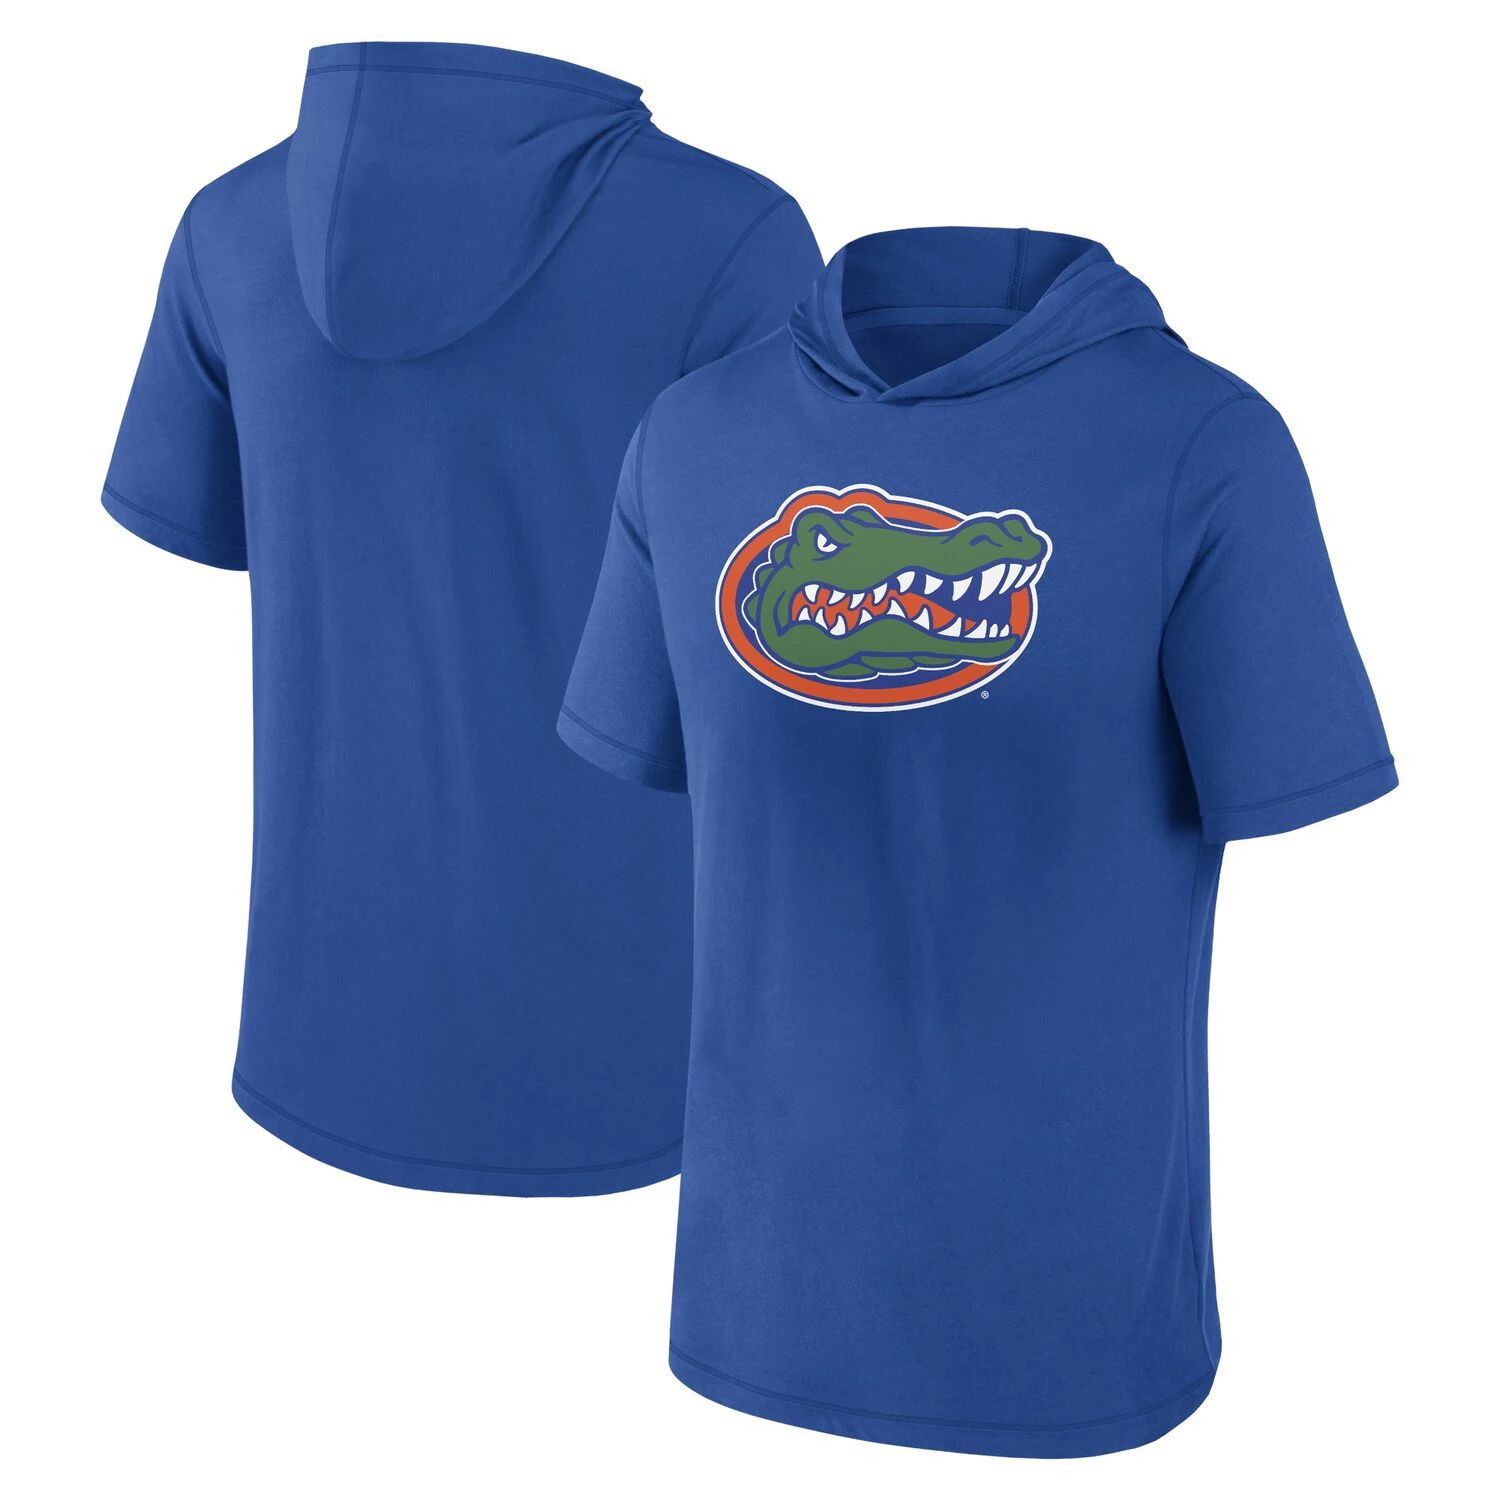 Мужская футболка с капюшоном с фирменным логотипом Royal Florida Gators Primary Fanatics